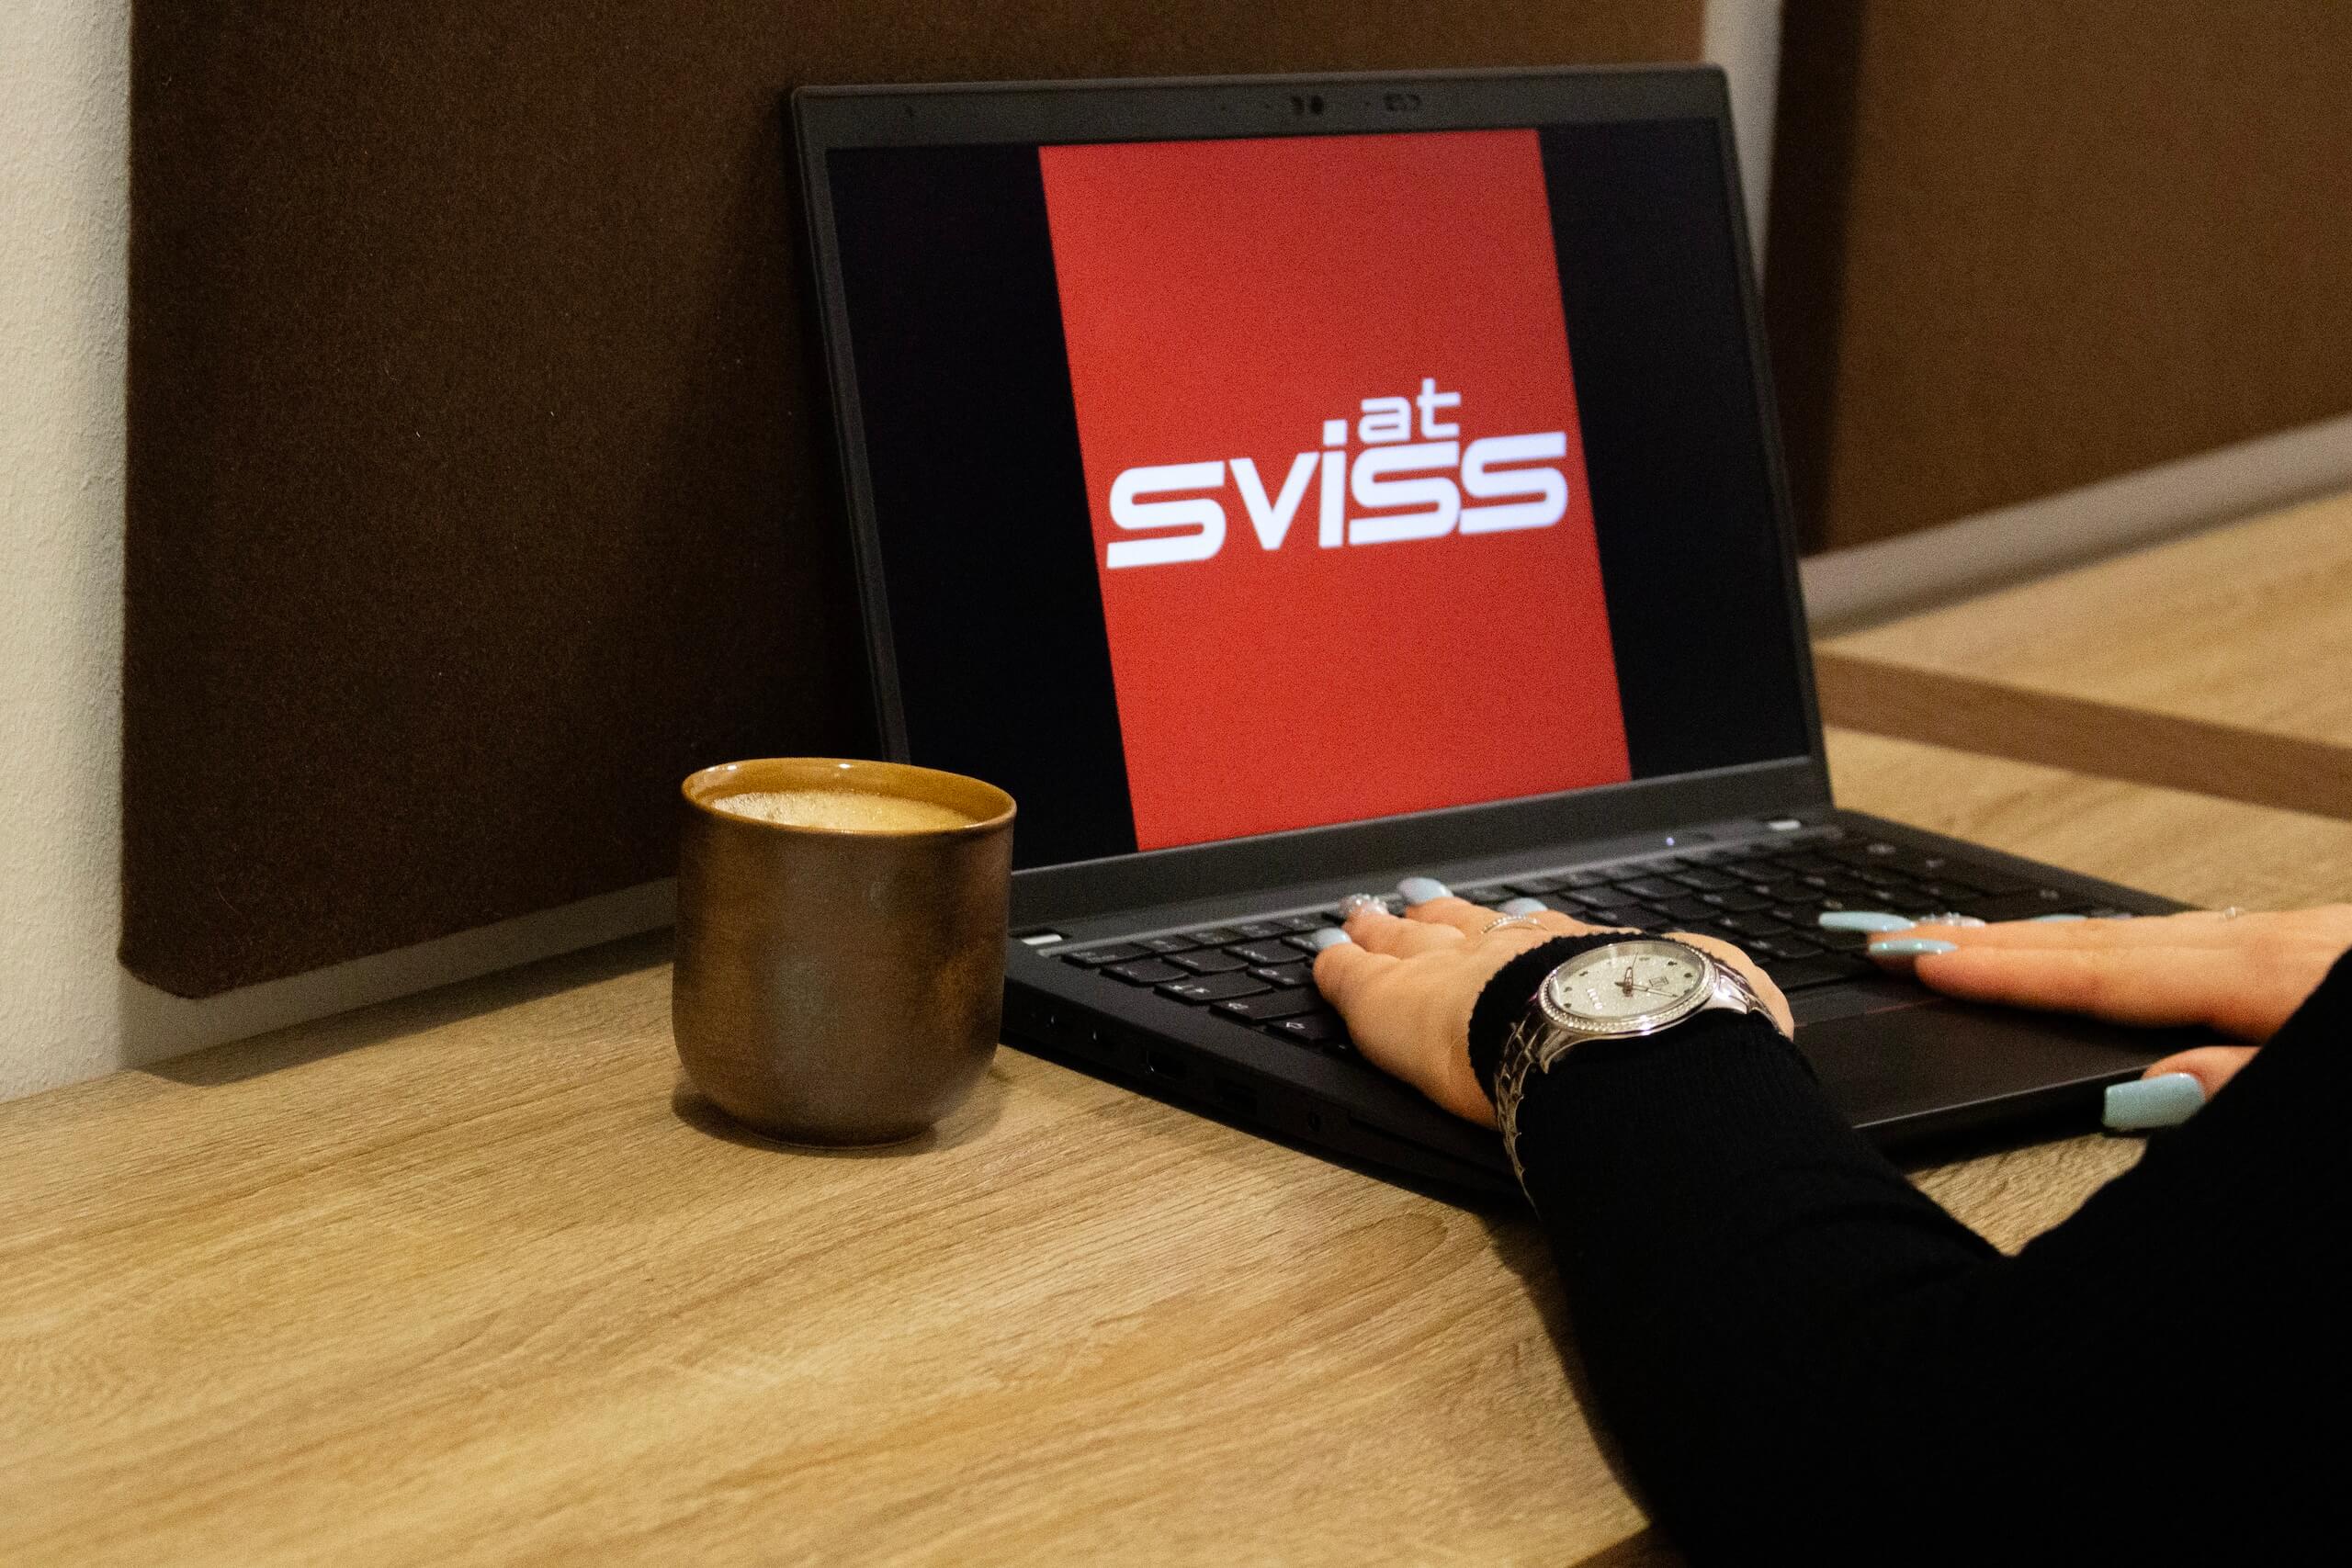 Frau sitzt vor einem Notebook mit Sviss Logo am Bildschirm